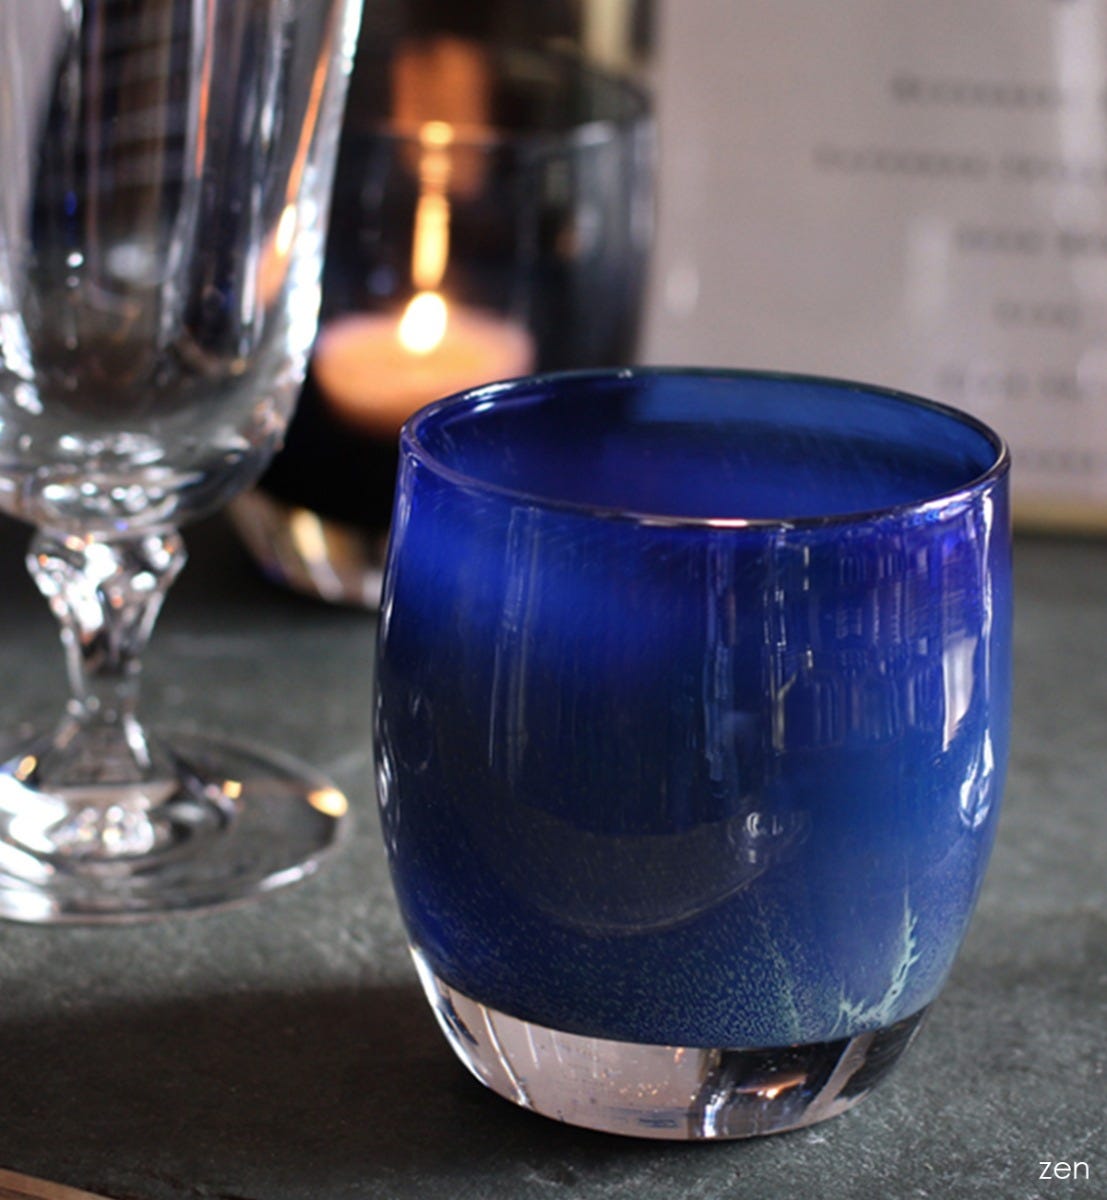 zen, midnight blue textured, hand-blown glass votive candle holder